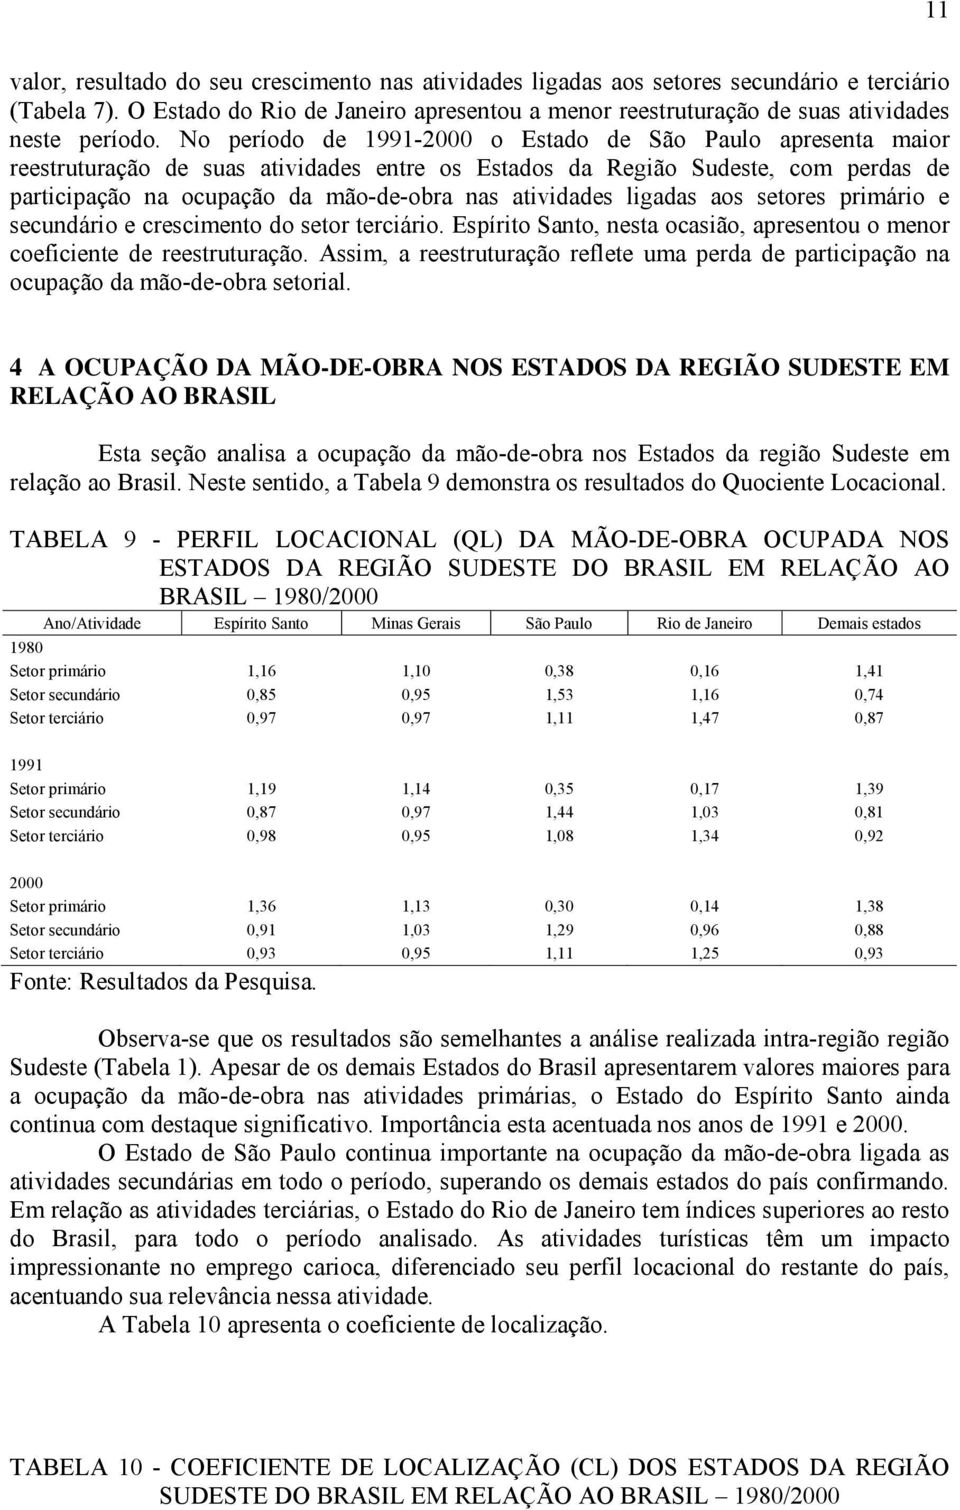 No período de 1991-2000 o Estado de São Paulo apresenta maior reestruturação de suas atividades entre os Estados da Região Sudeste, com perdas de participação na ocupação da mão-de-obra nas